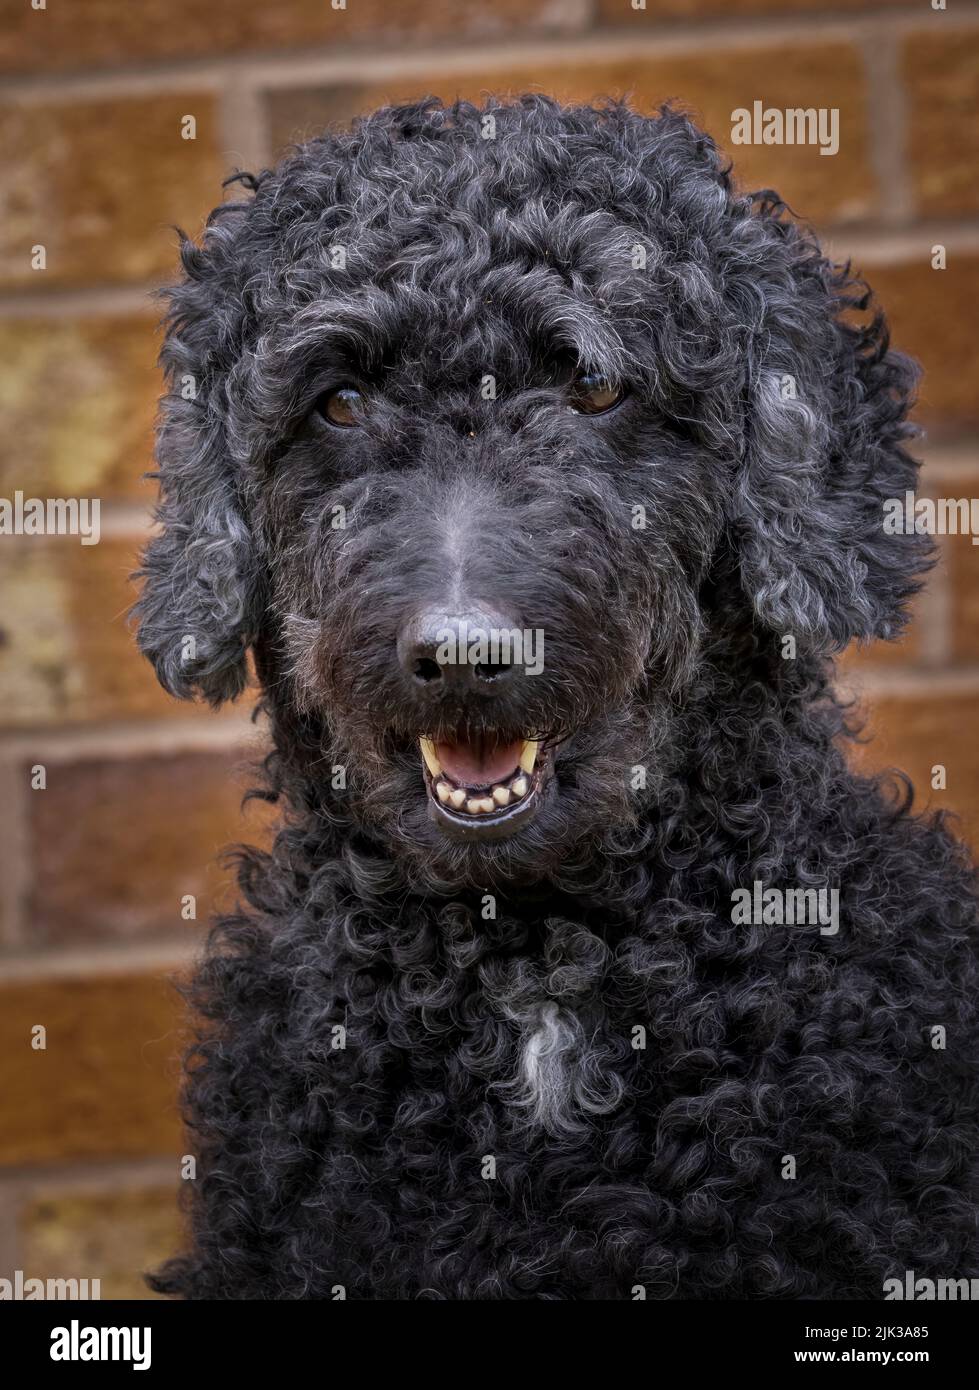 Lindo perro Labradoodle negro, mirando hacia la cámara con la boca abierta. Fotografiado contra una pared de ladrillo Foto de stock